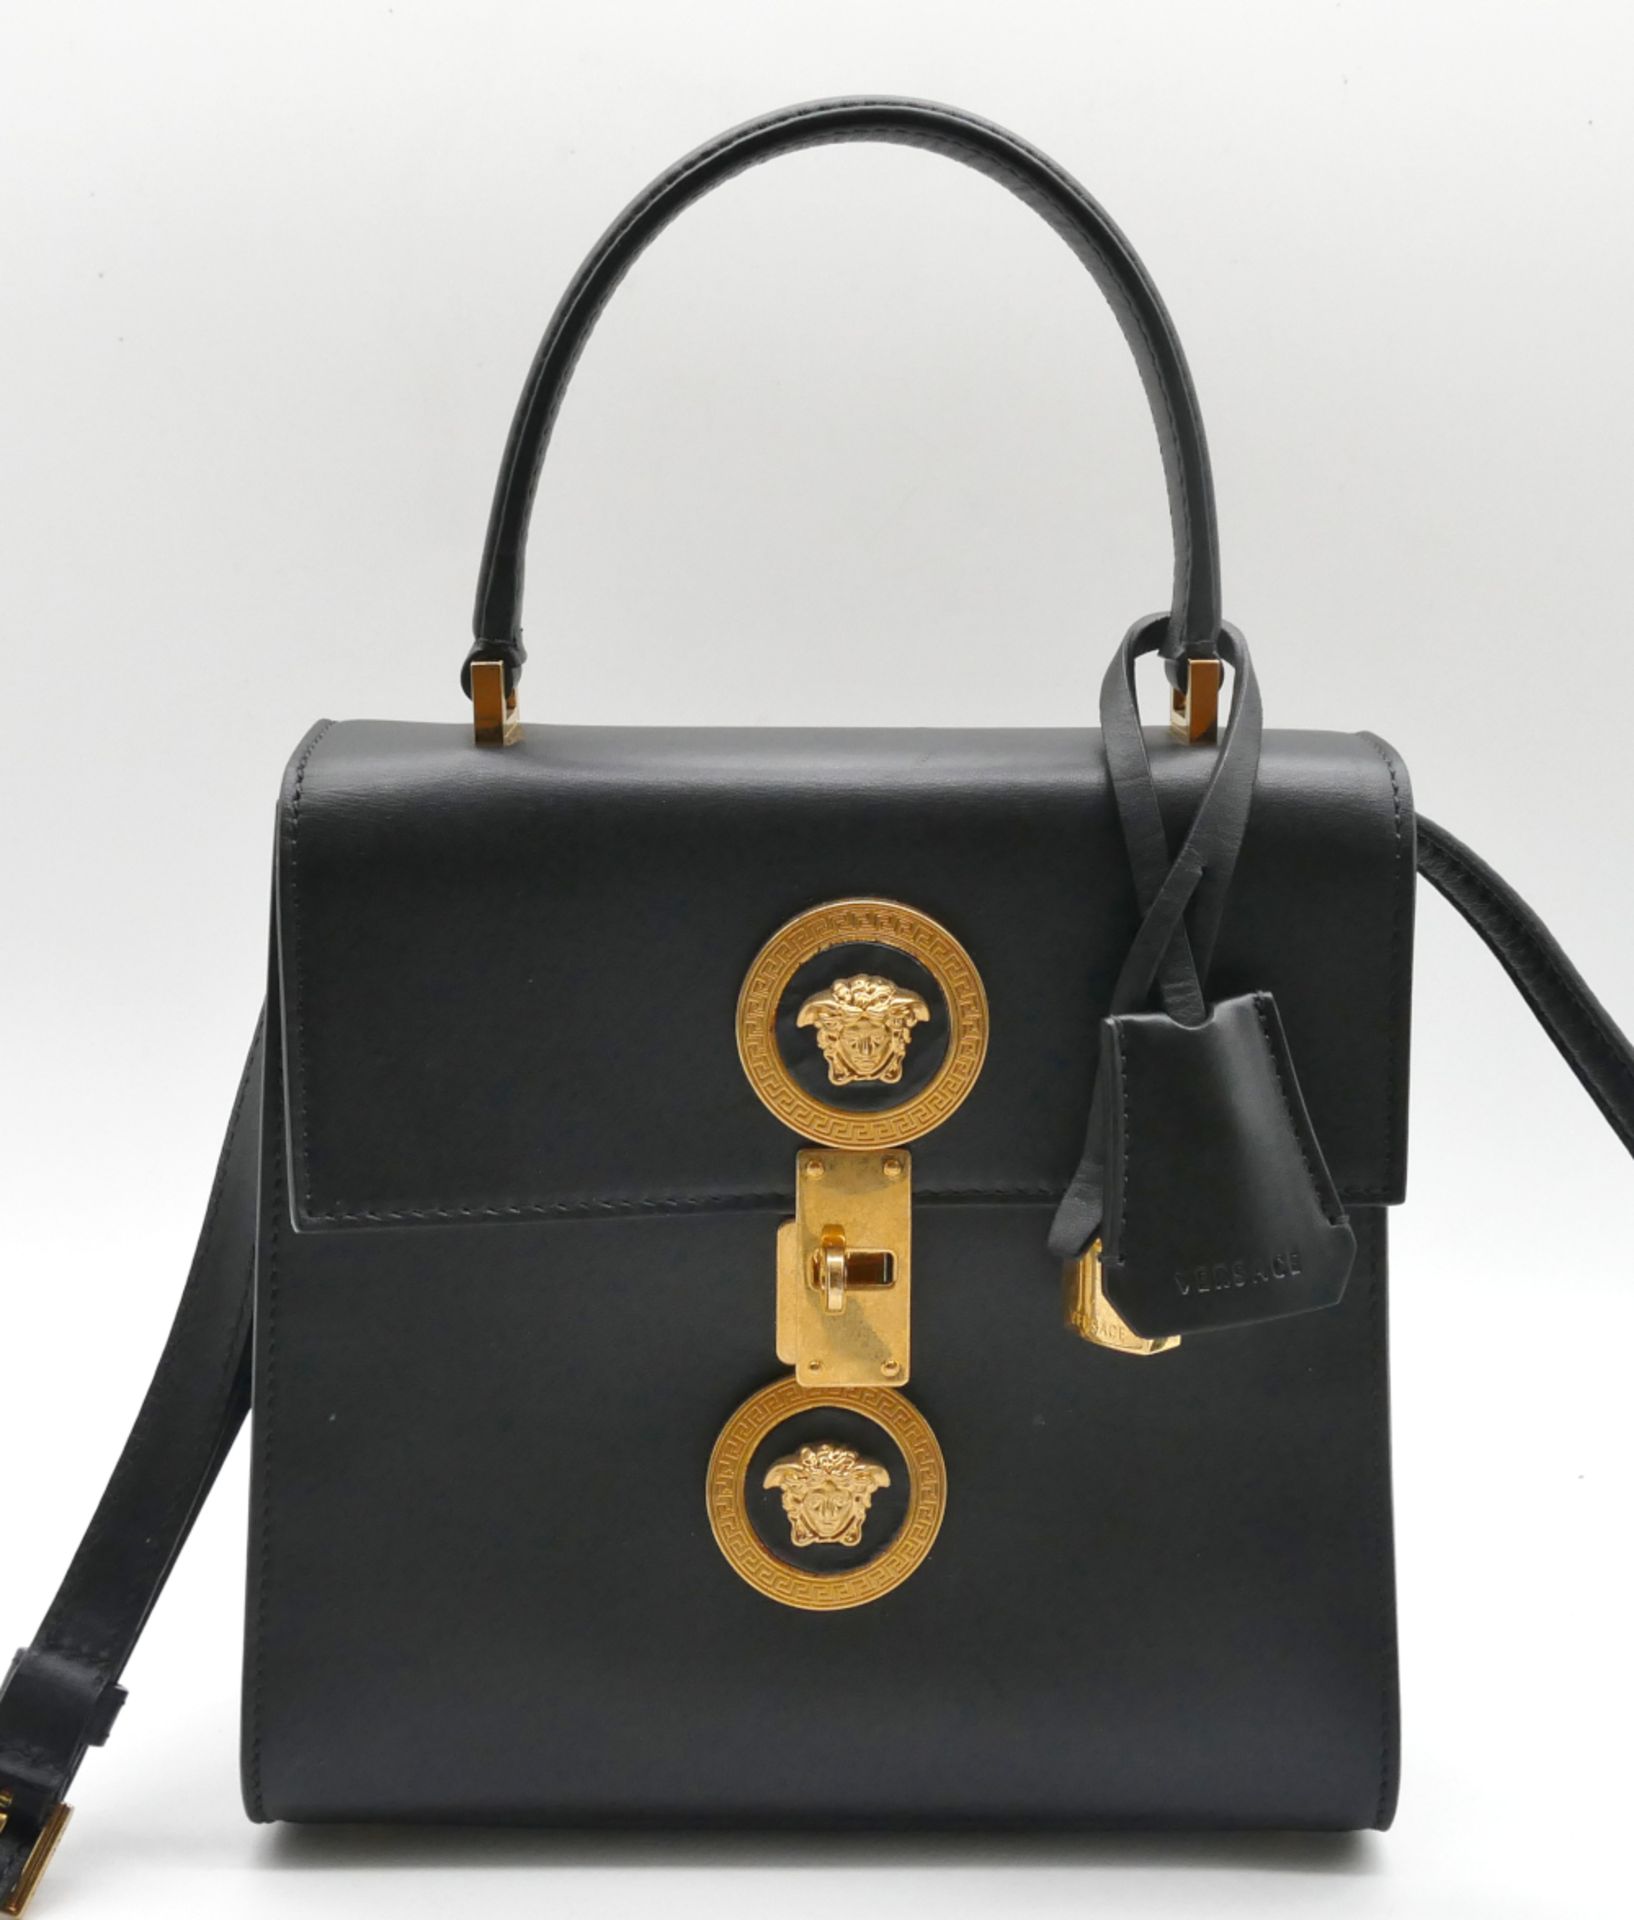 1 Damenhandtasche VERSACE, schwarzes Glattleder, mit Schulterriemen (abnehmbar), mit Schlüssel und S